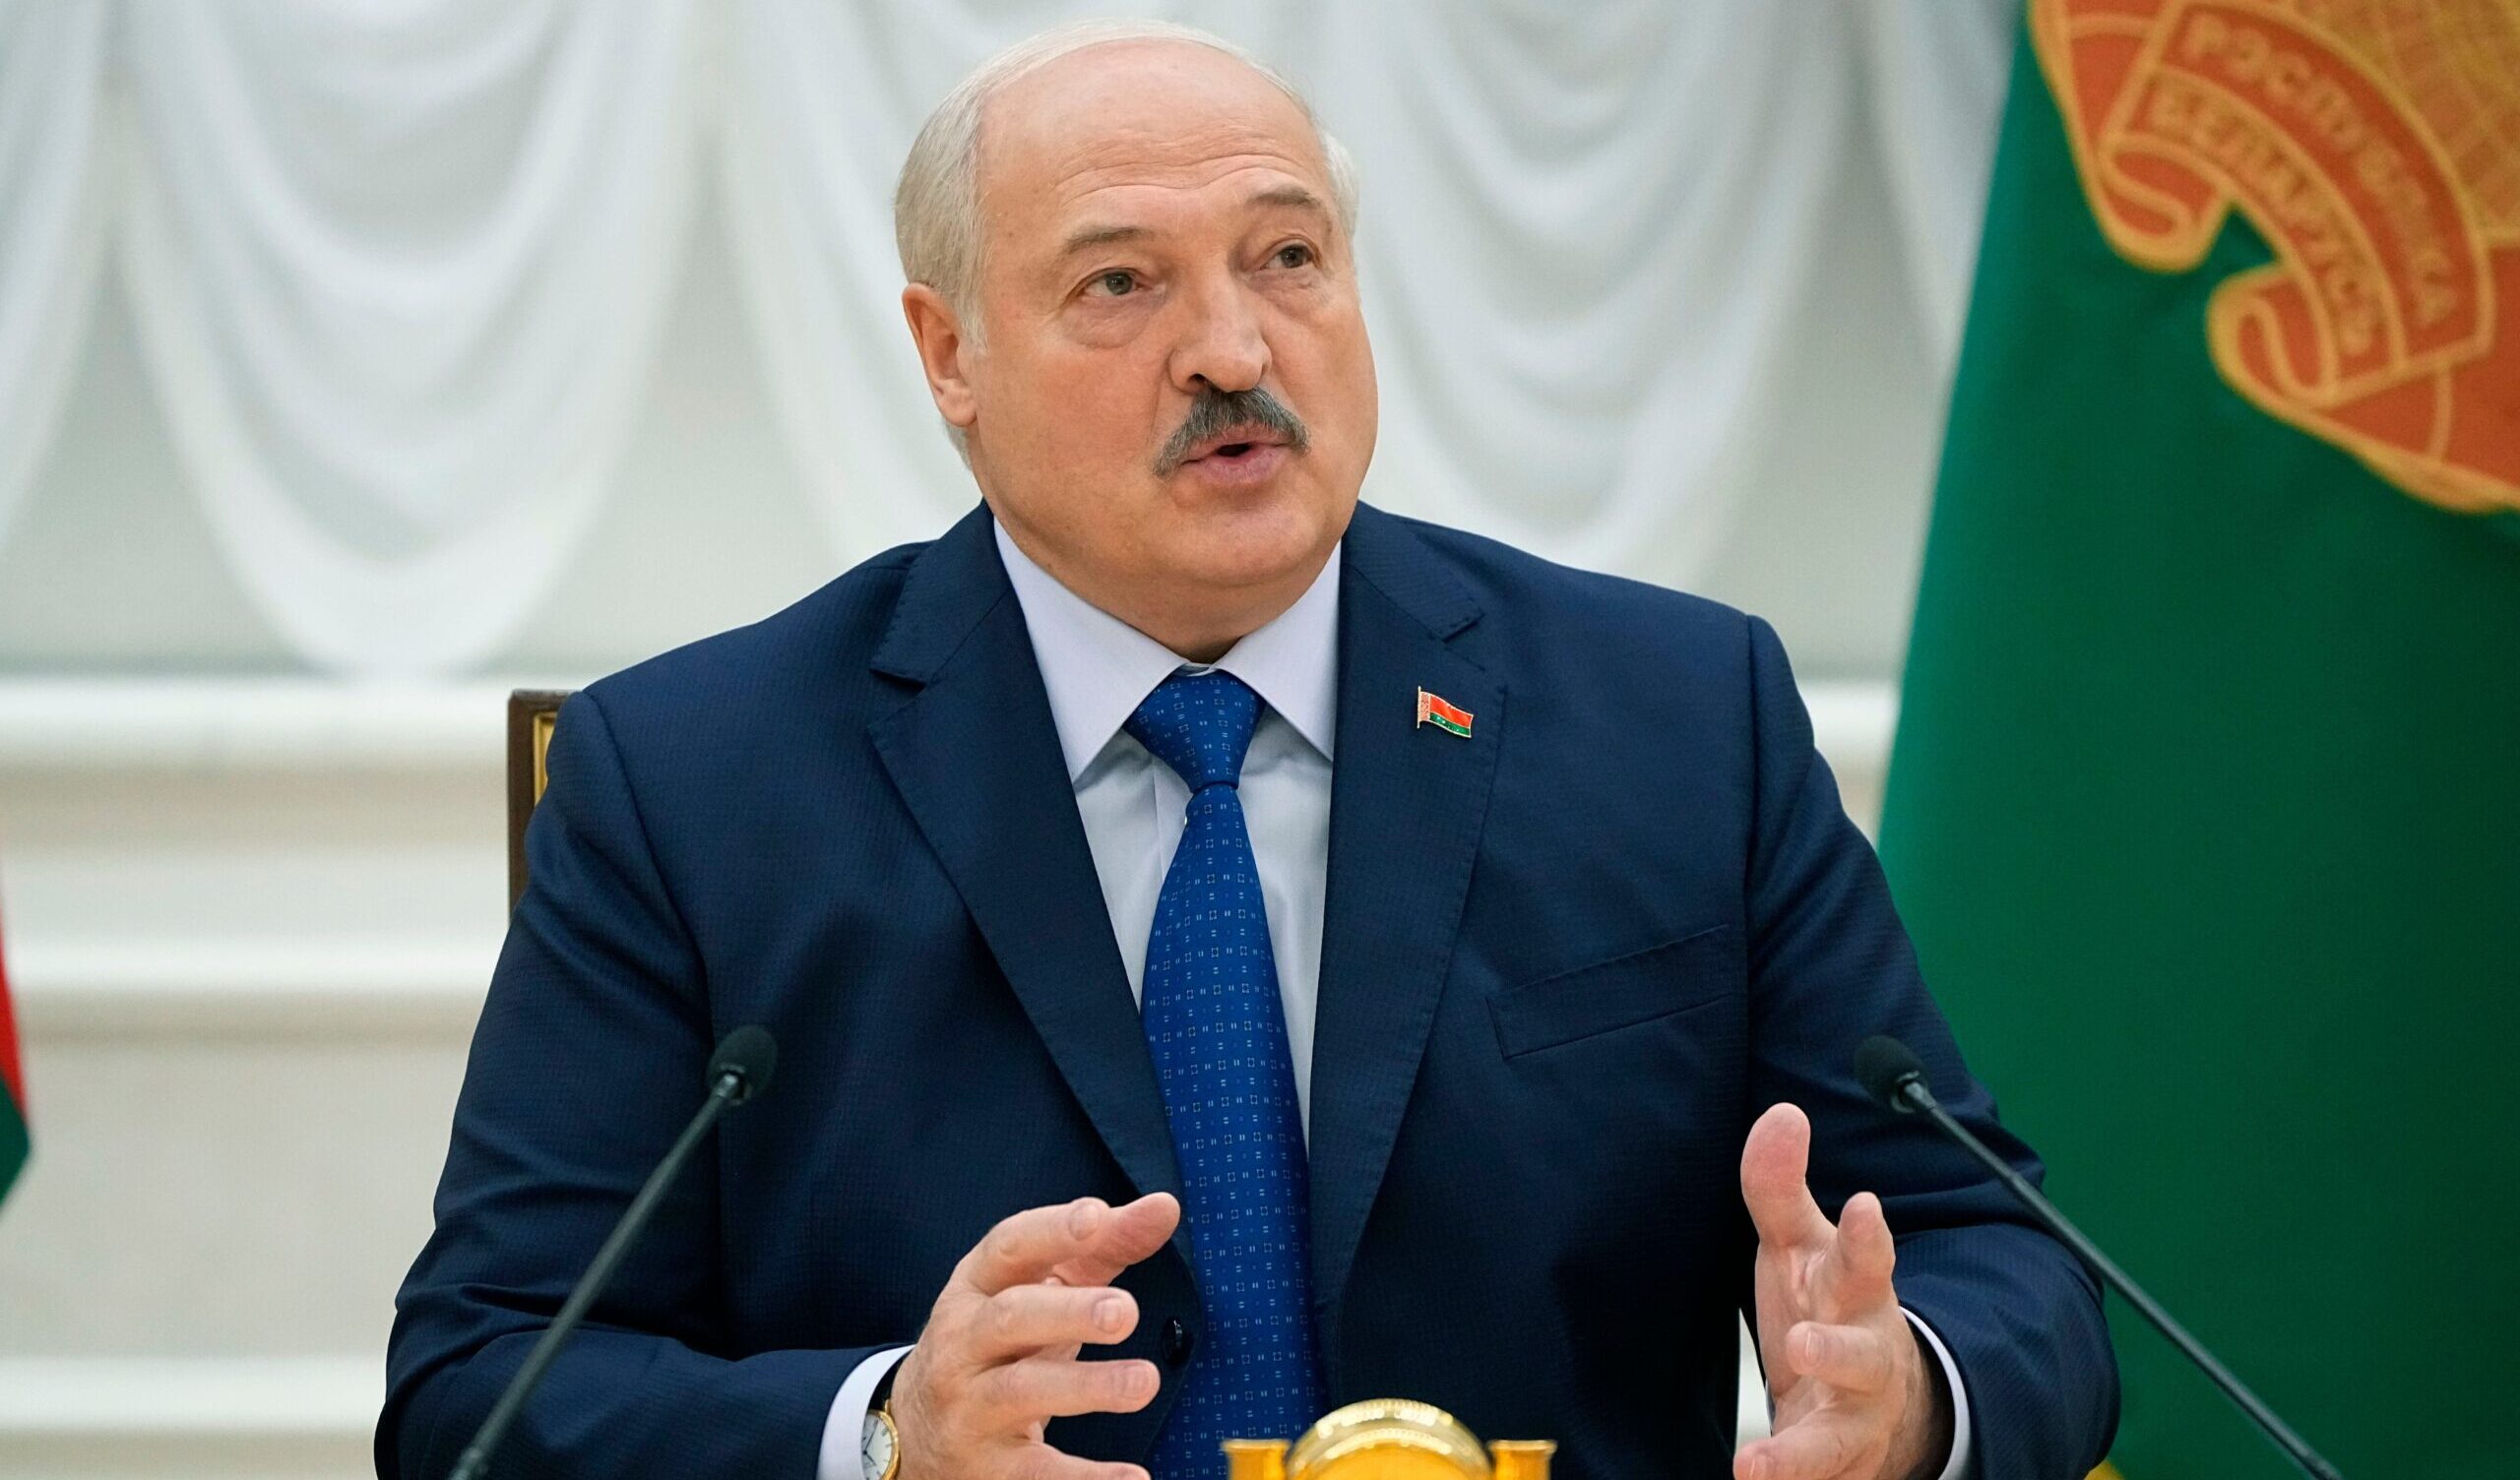 Bielorussia, la Ue annuncia nuove sanzioni contro il regime di Lukashenko